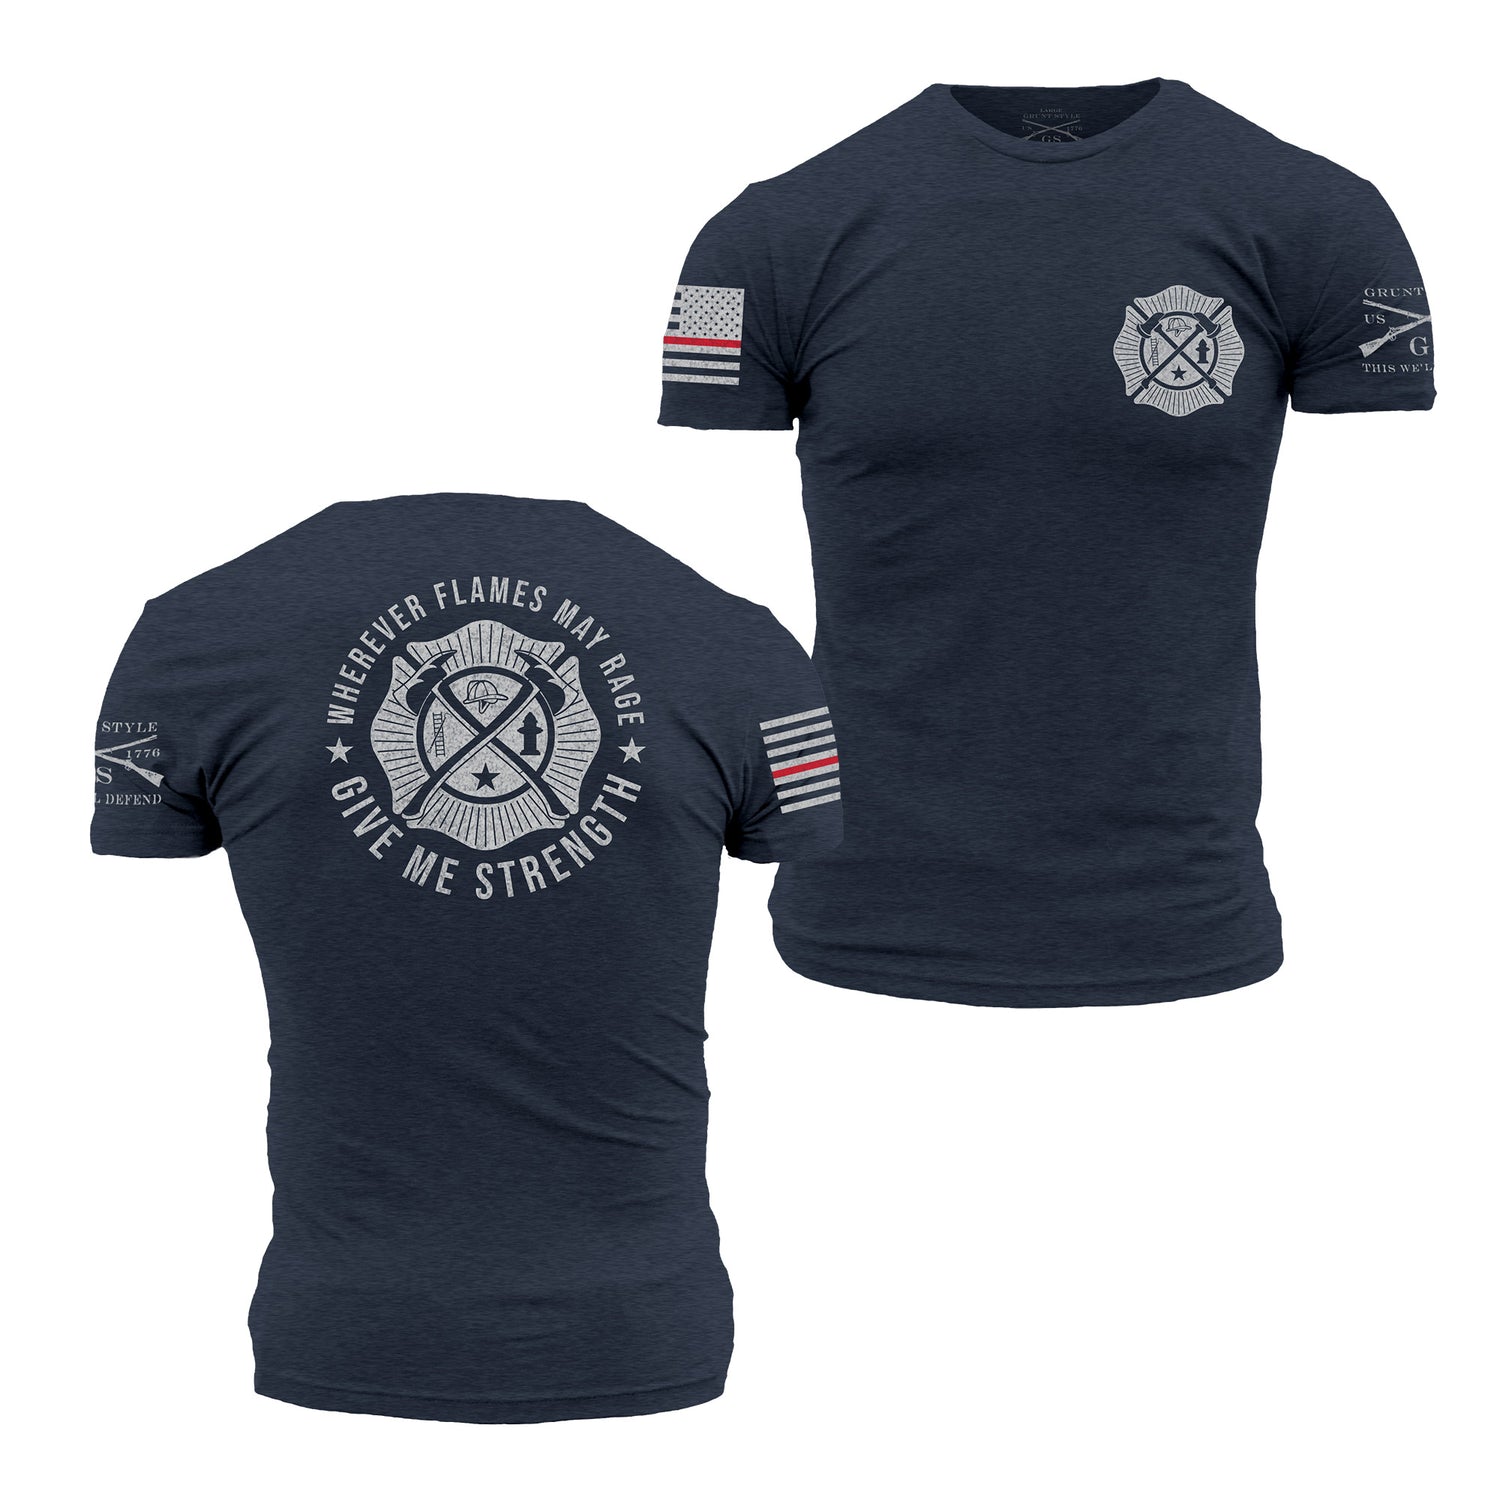 firefighter shirts - shirt bundles